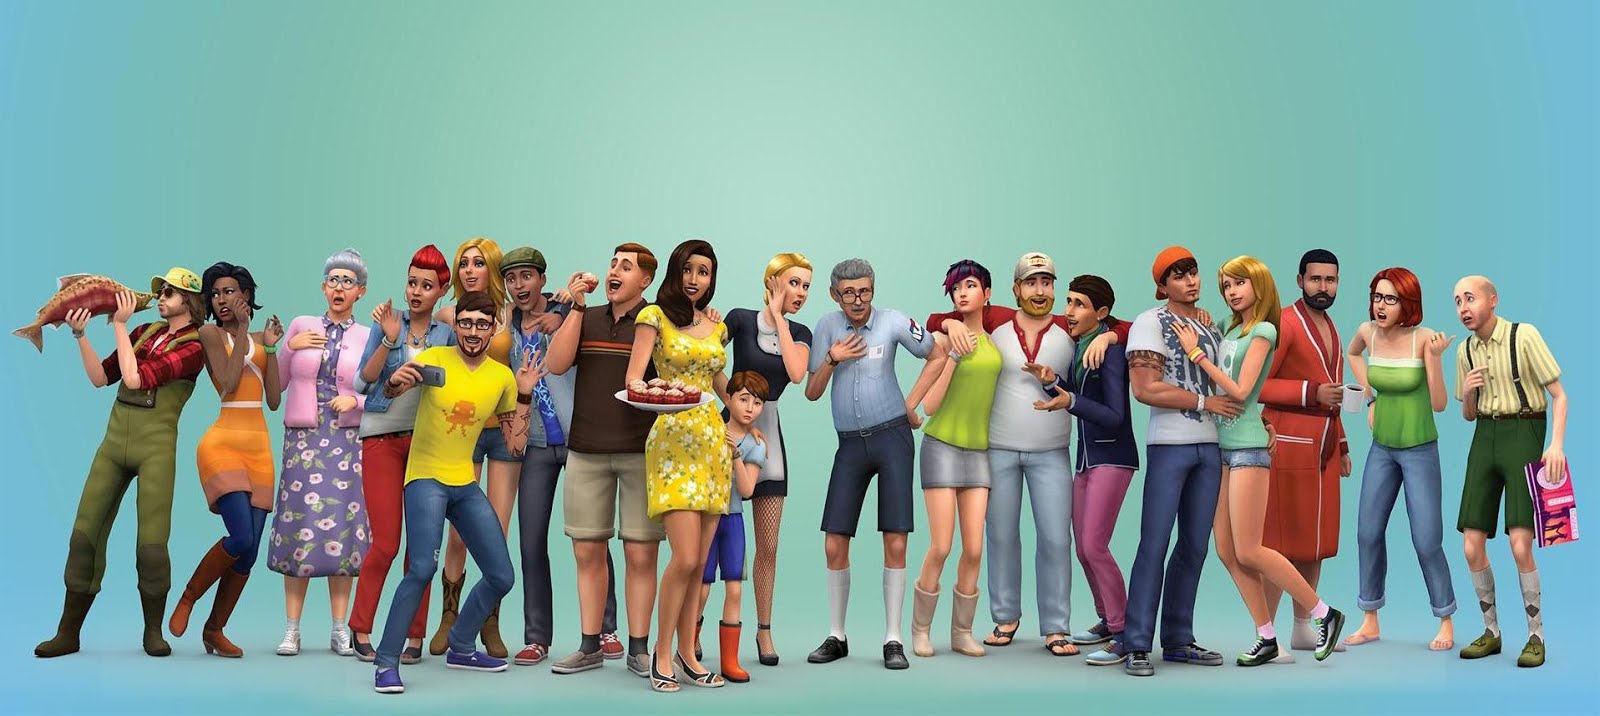 The Sims 4 Model แจกตัวซิมส์ 4 น่ารักๆ สวยๆ หล่อๆ ทั้งชายและหญิง